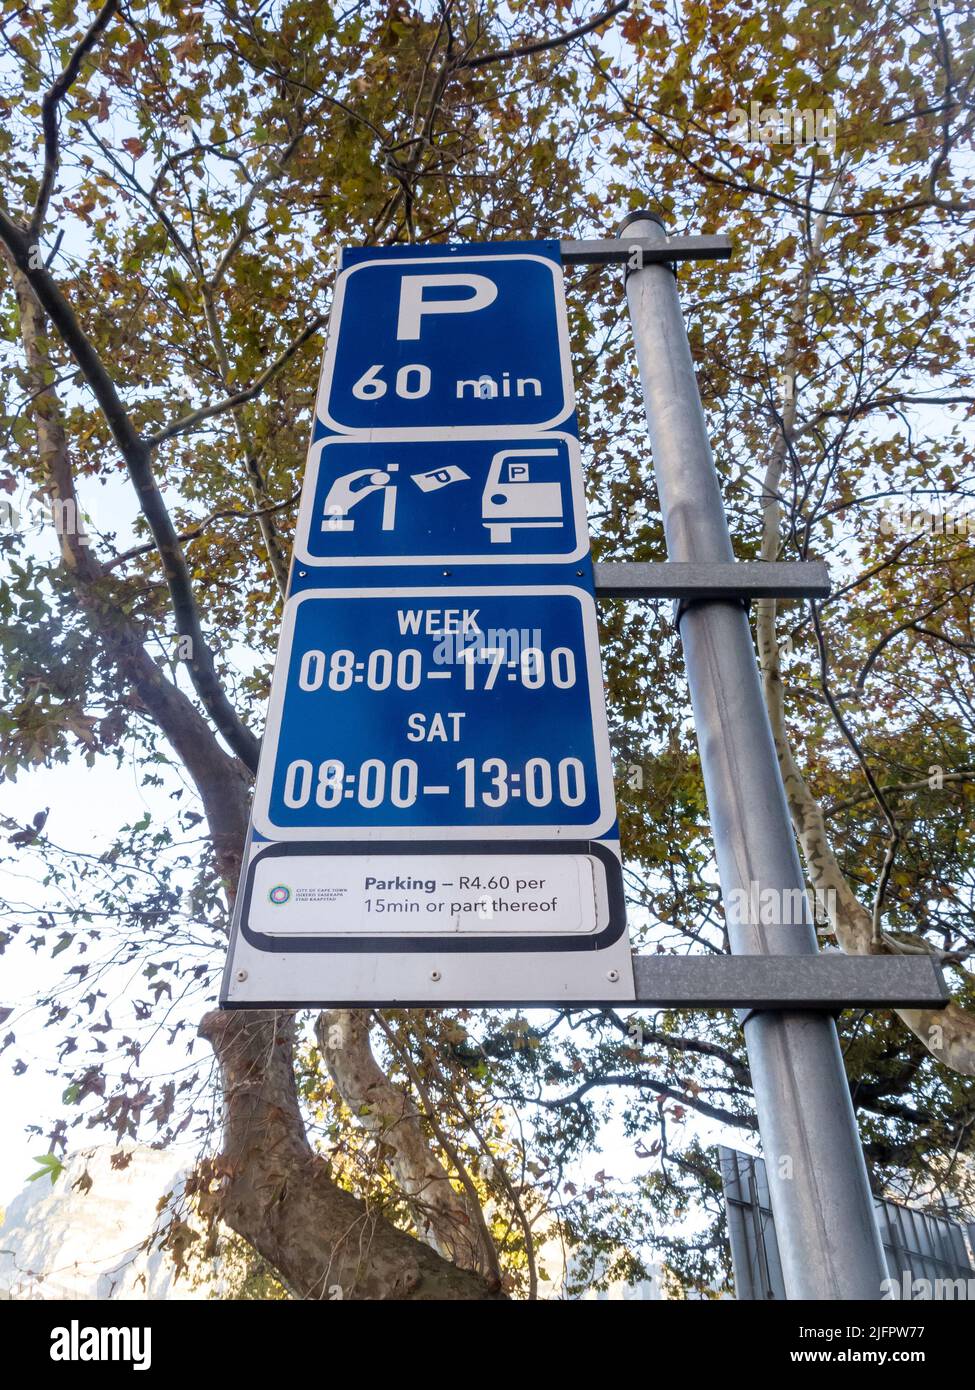 Segnali di parcheggio o segnaletica su un palo che indicano tempi e costi limitati o costi dalla città di Città del Capo, Sudafrica Foto Stock